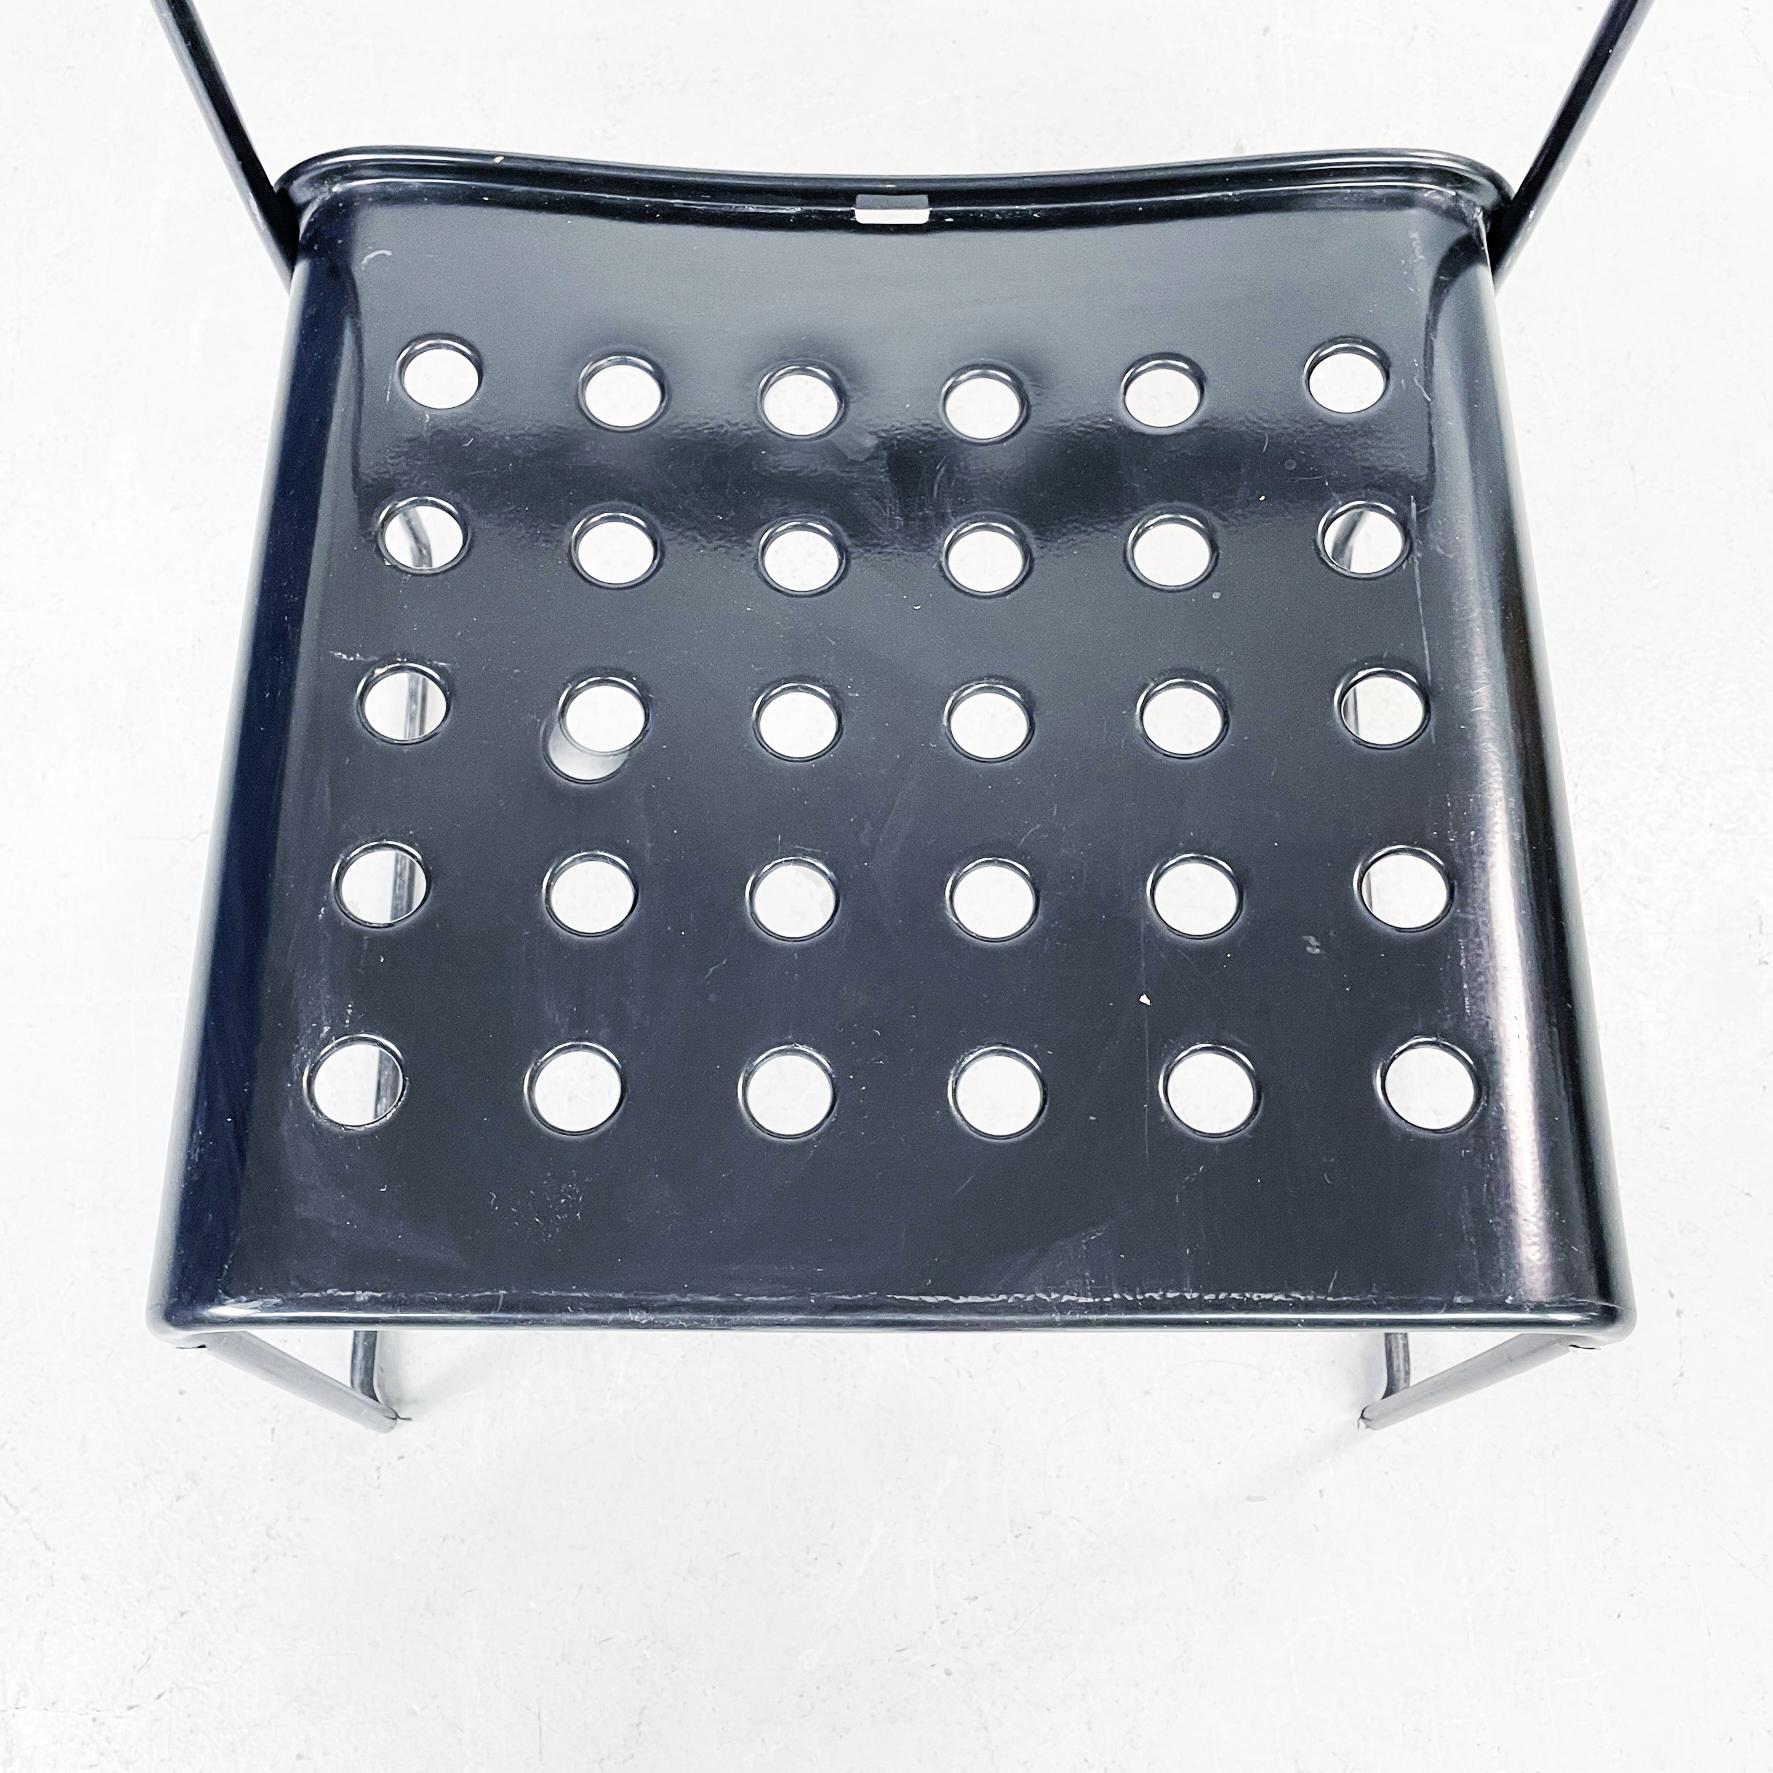 Italian Modern Black Steel Chairs Omstak by Rodney Kinsman Bieffeplast, 1970s For Sale 5